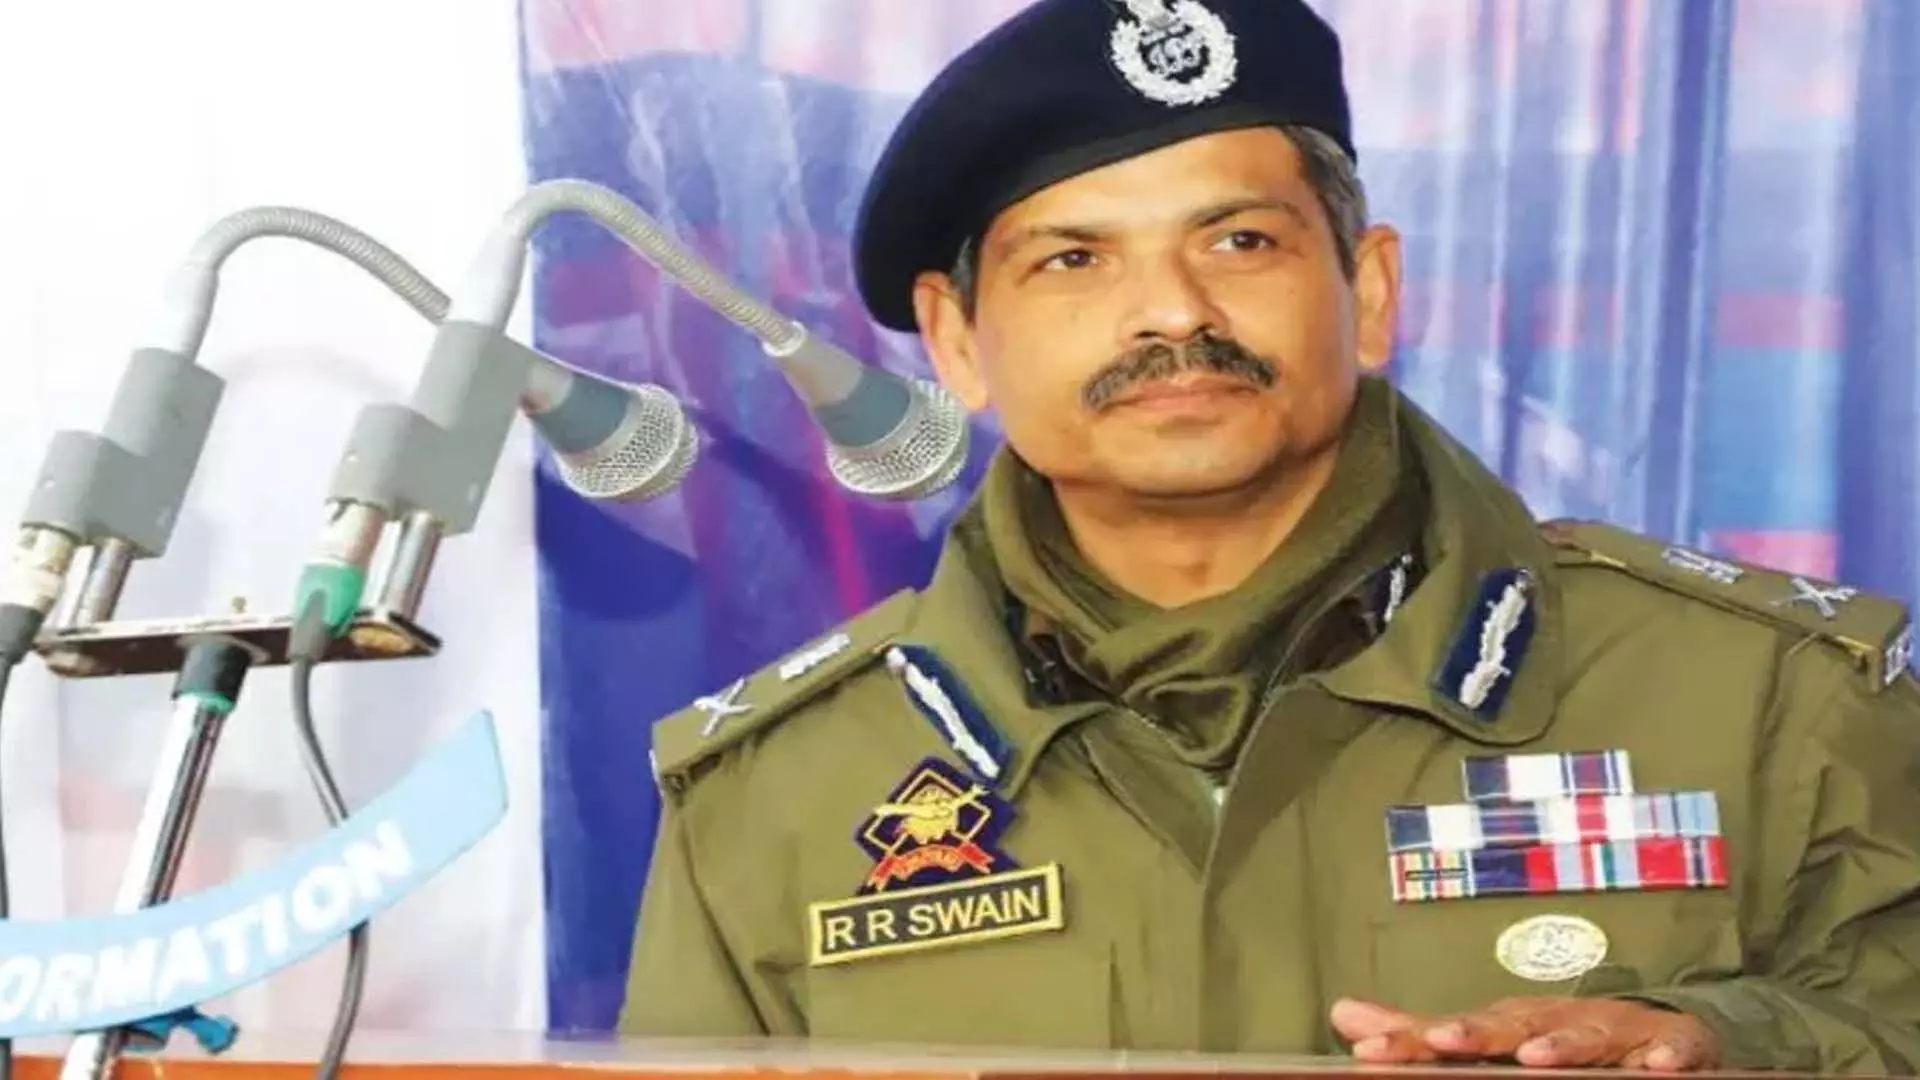 जम्मू-कश्मीर के पुलिस महानिदेशक आर.आर. स्वैन ने रियासी जिले का दौरा किया